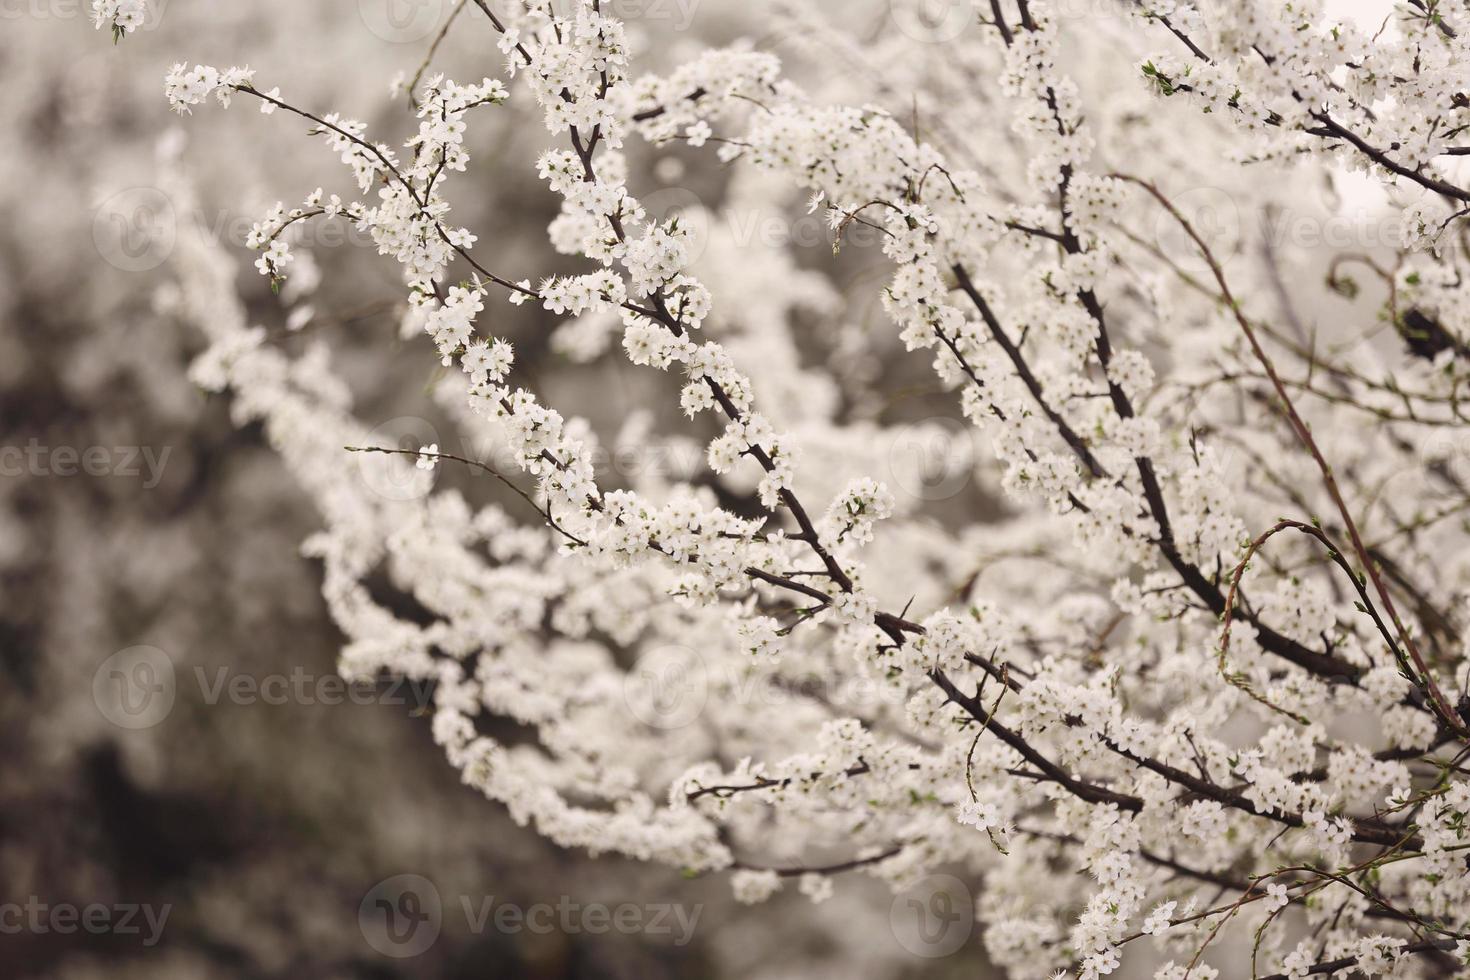 kersenbloesem in volle bloei. kersenbloemen in kleine trossen op een kersenboomtak, vervagend naar wit. ondiepe scherptediepte. focus op centrum bloem cluster. foto